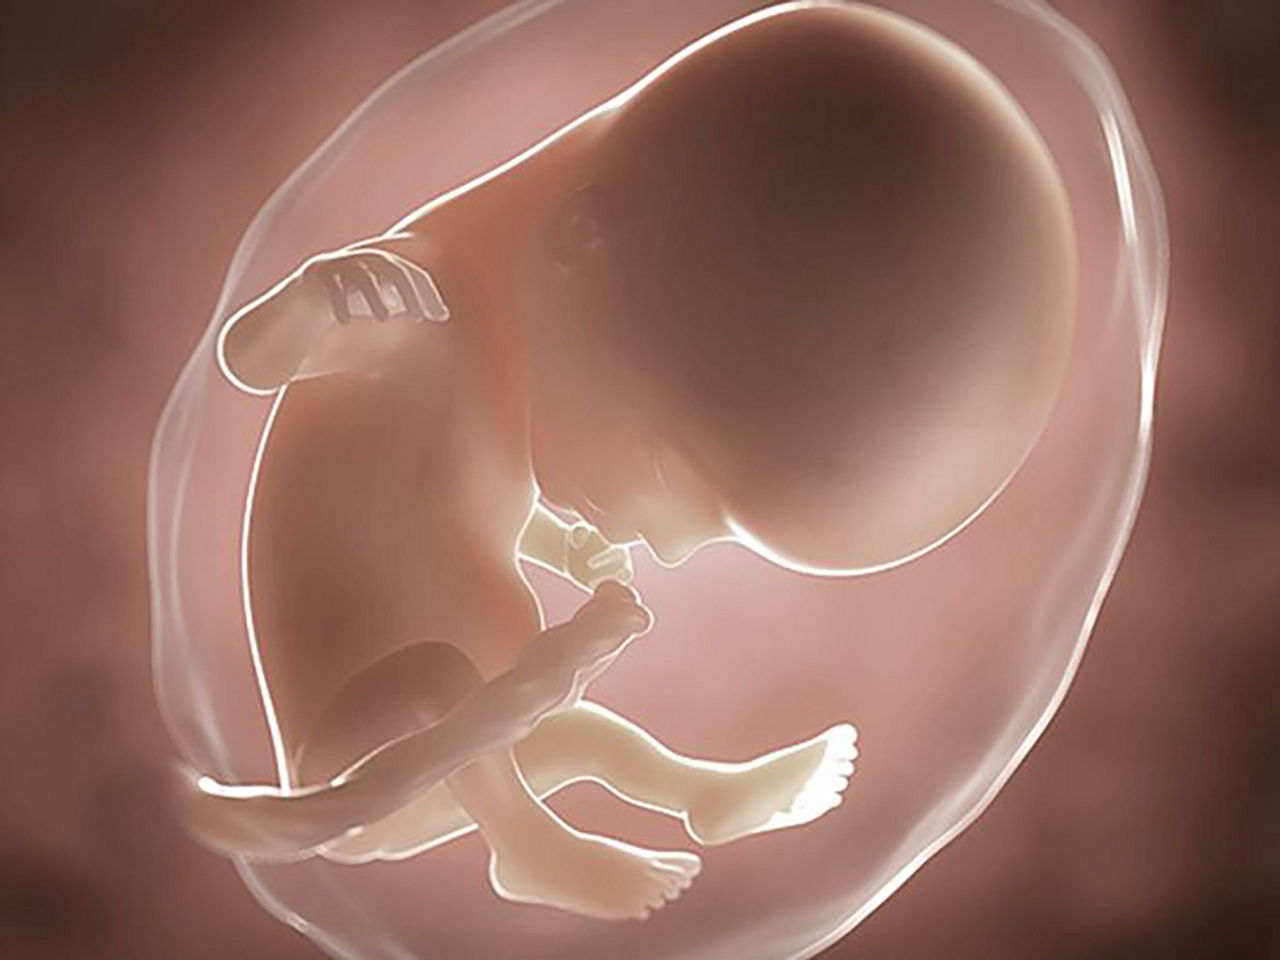 foetus pregnancy week 14